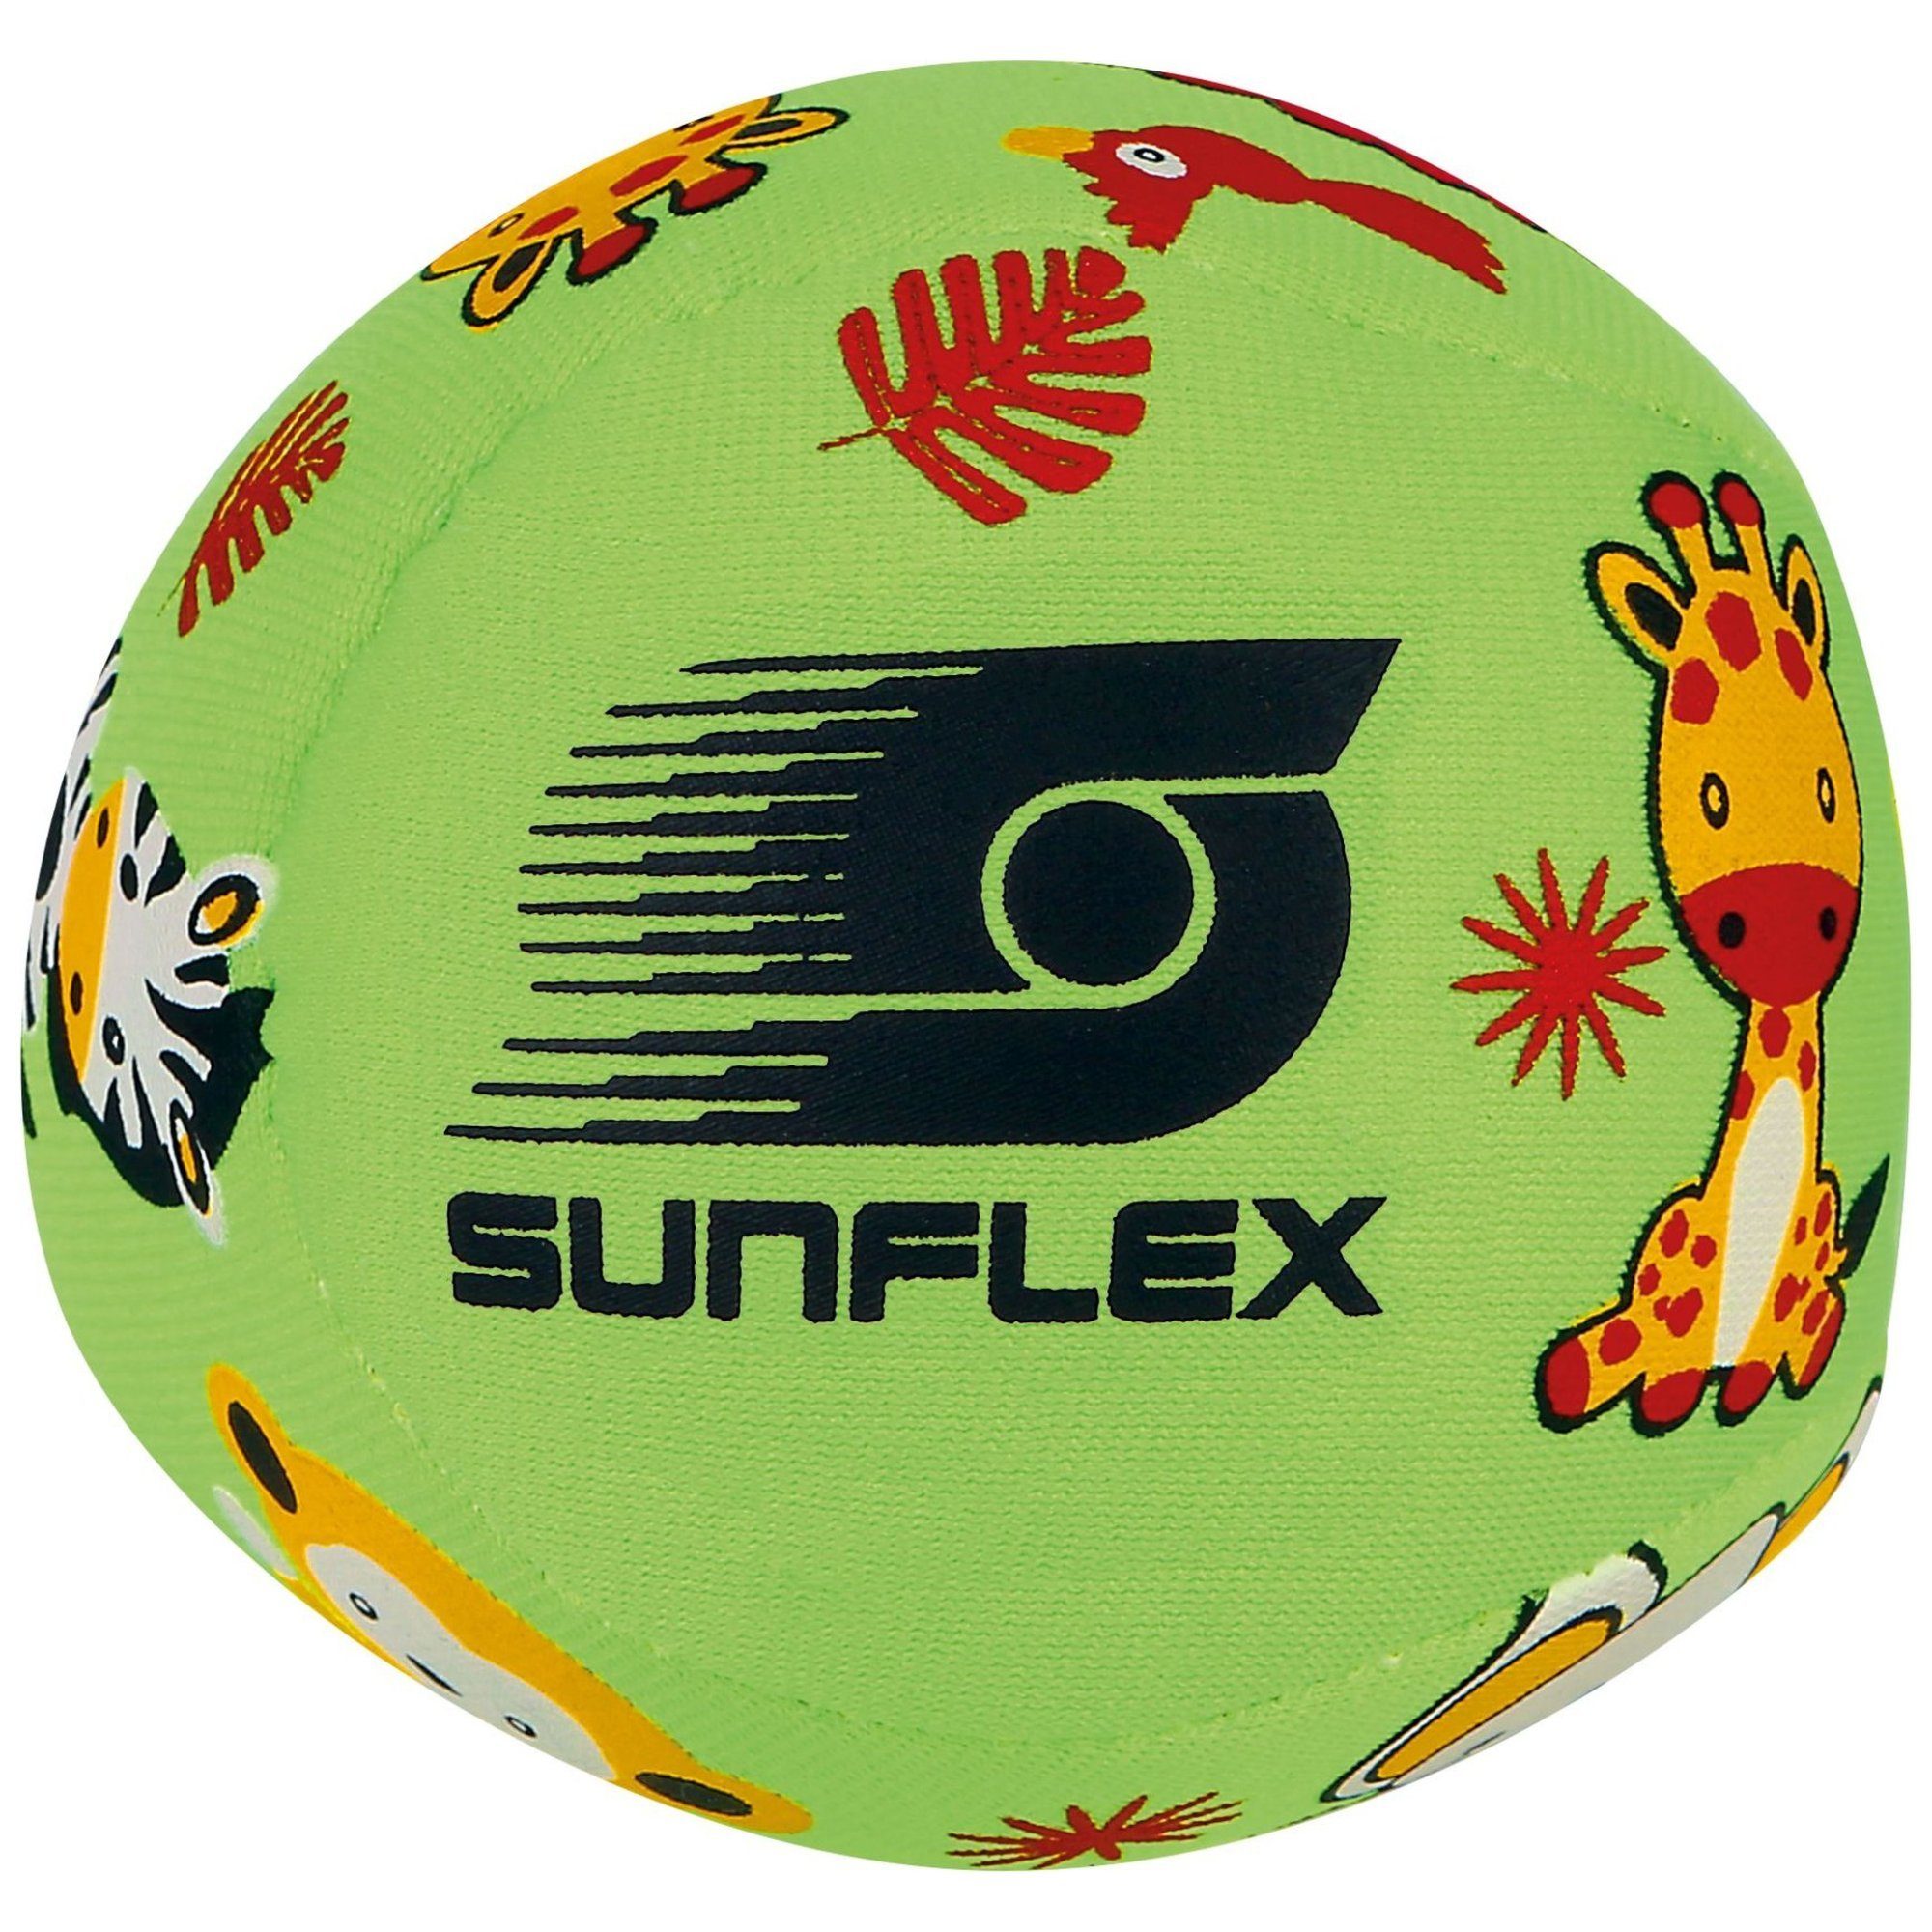 Sunflex Youngster Softball sunflex grün Softball Small